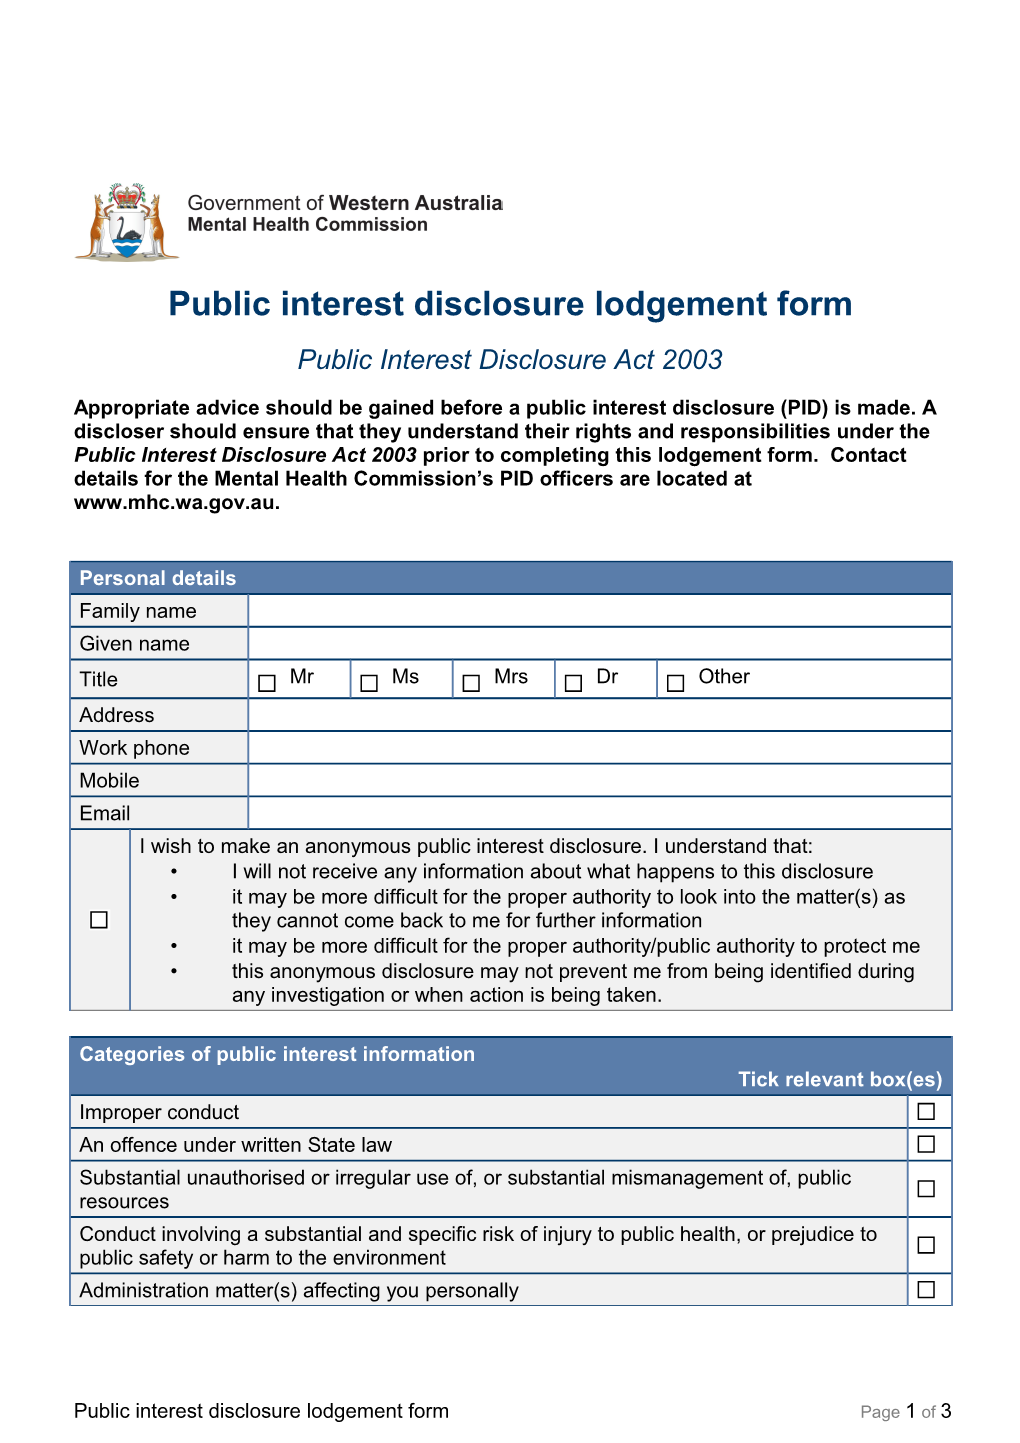 Public Interest Disclosure Lodgement Form